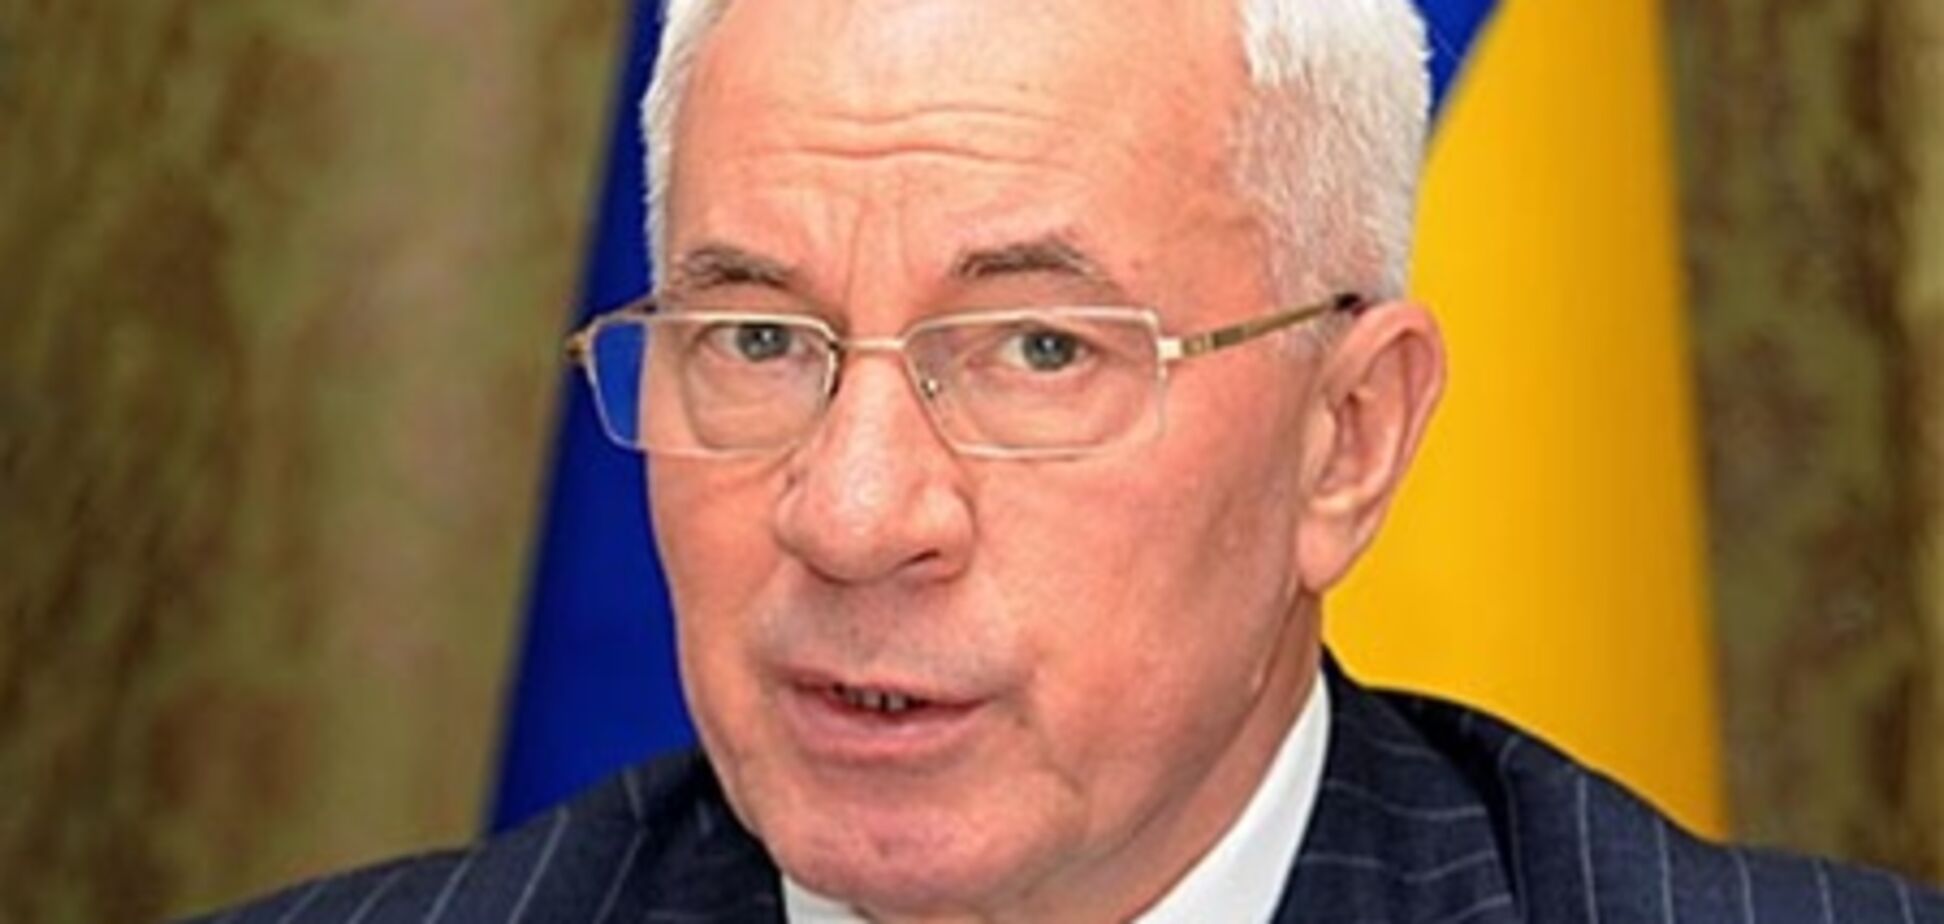 Азаров подал в отставку, 21 ноября 2012